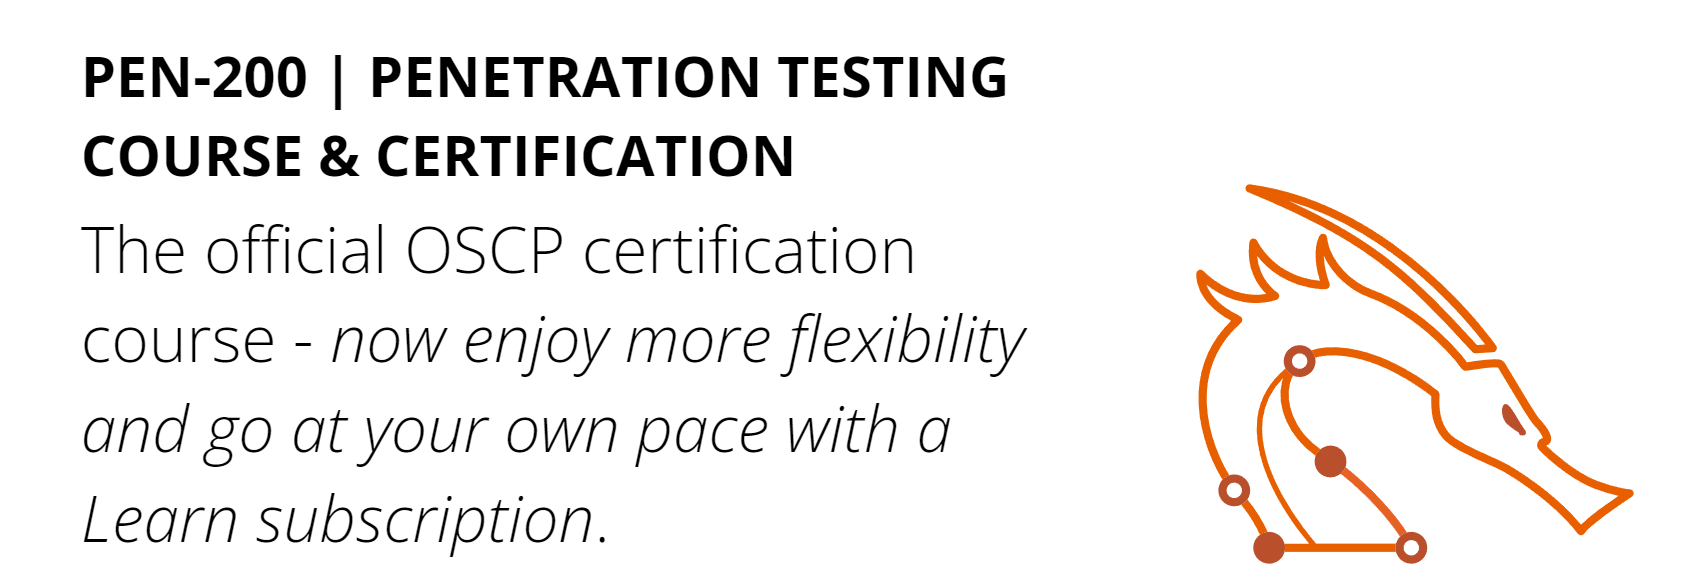 best penetration testing course PEN-200 Penetration Testing Course And OSCP Certification on Offensive Security